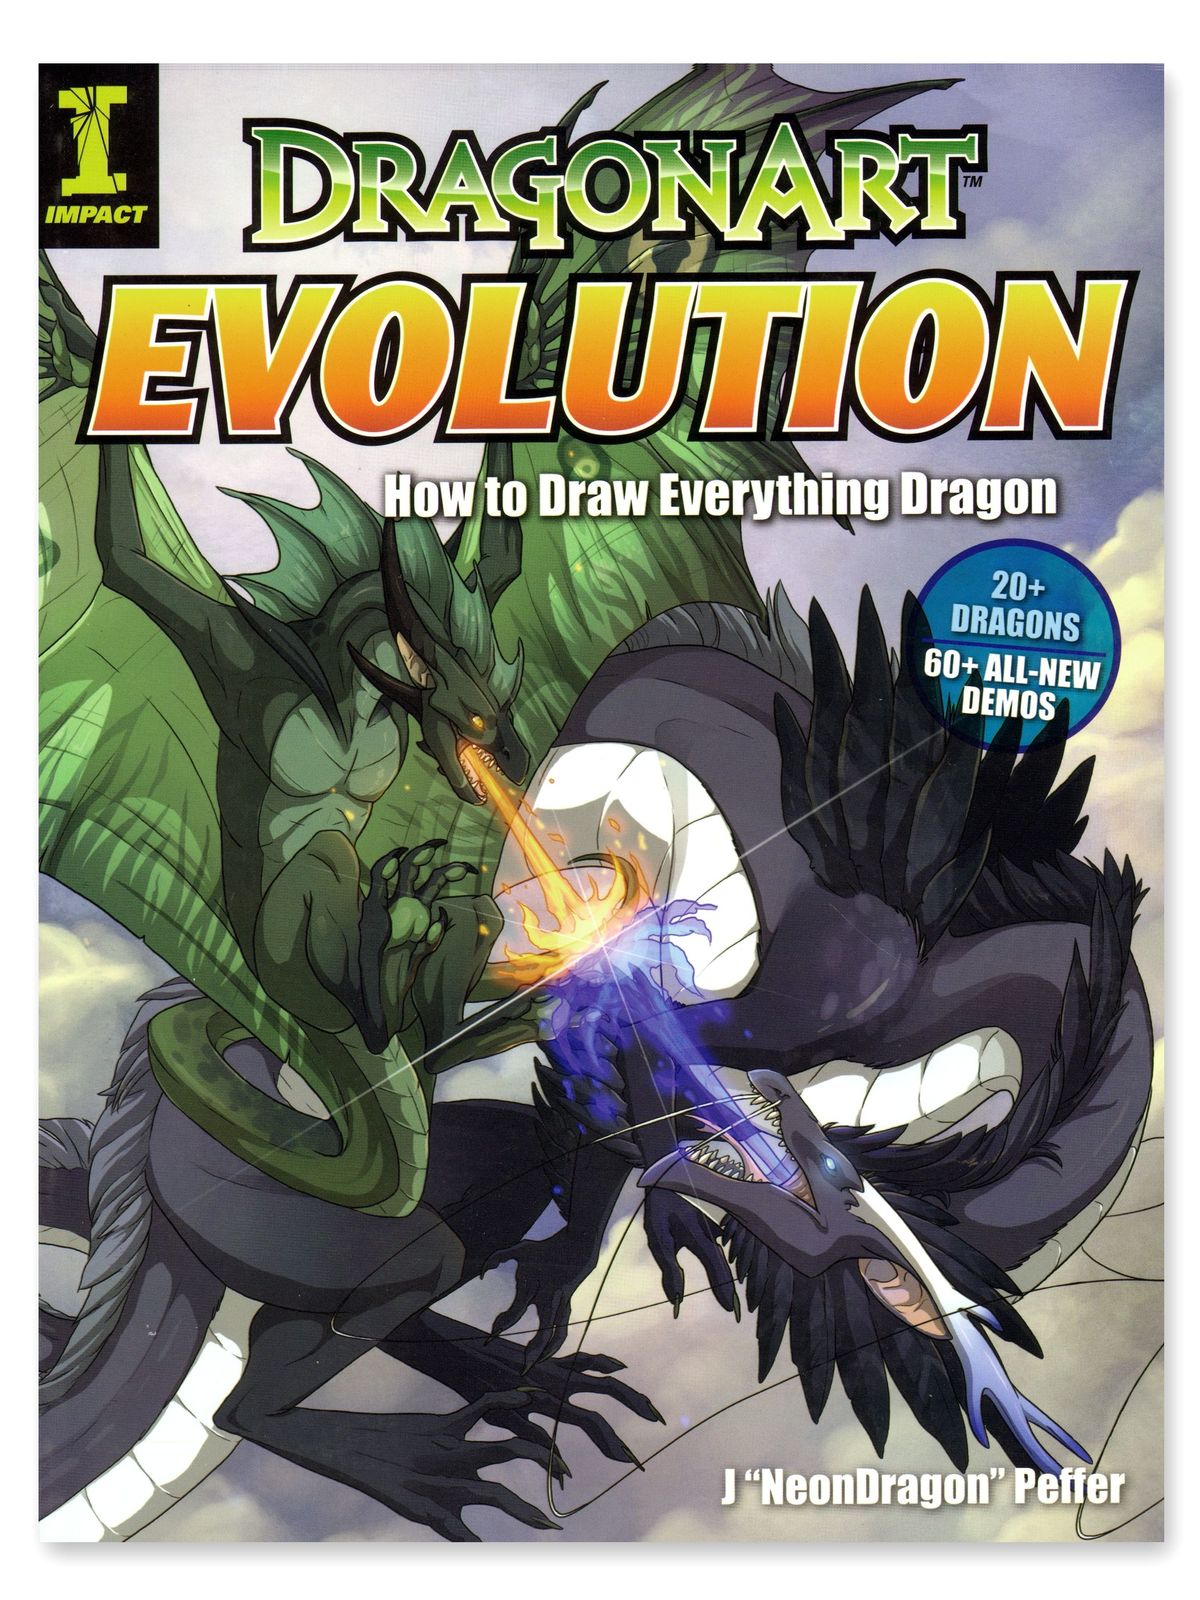 Dragonart Evolution Each